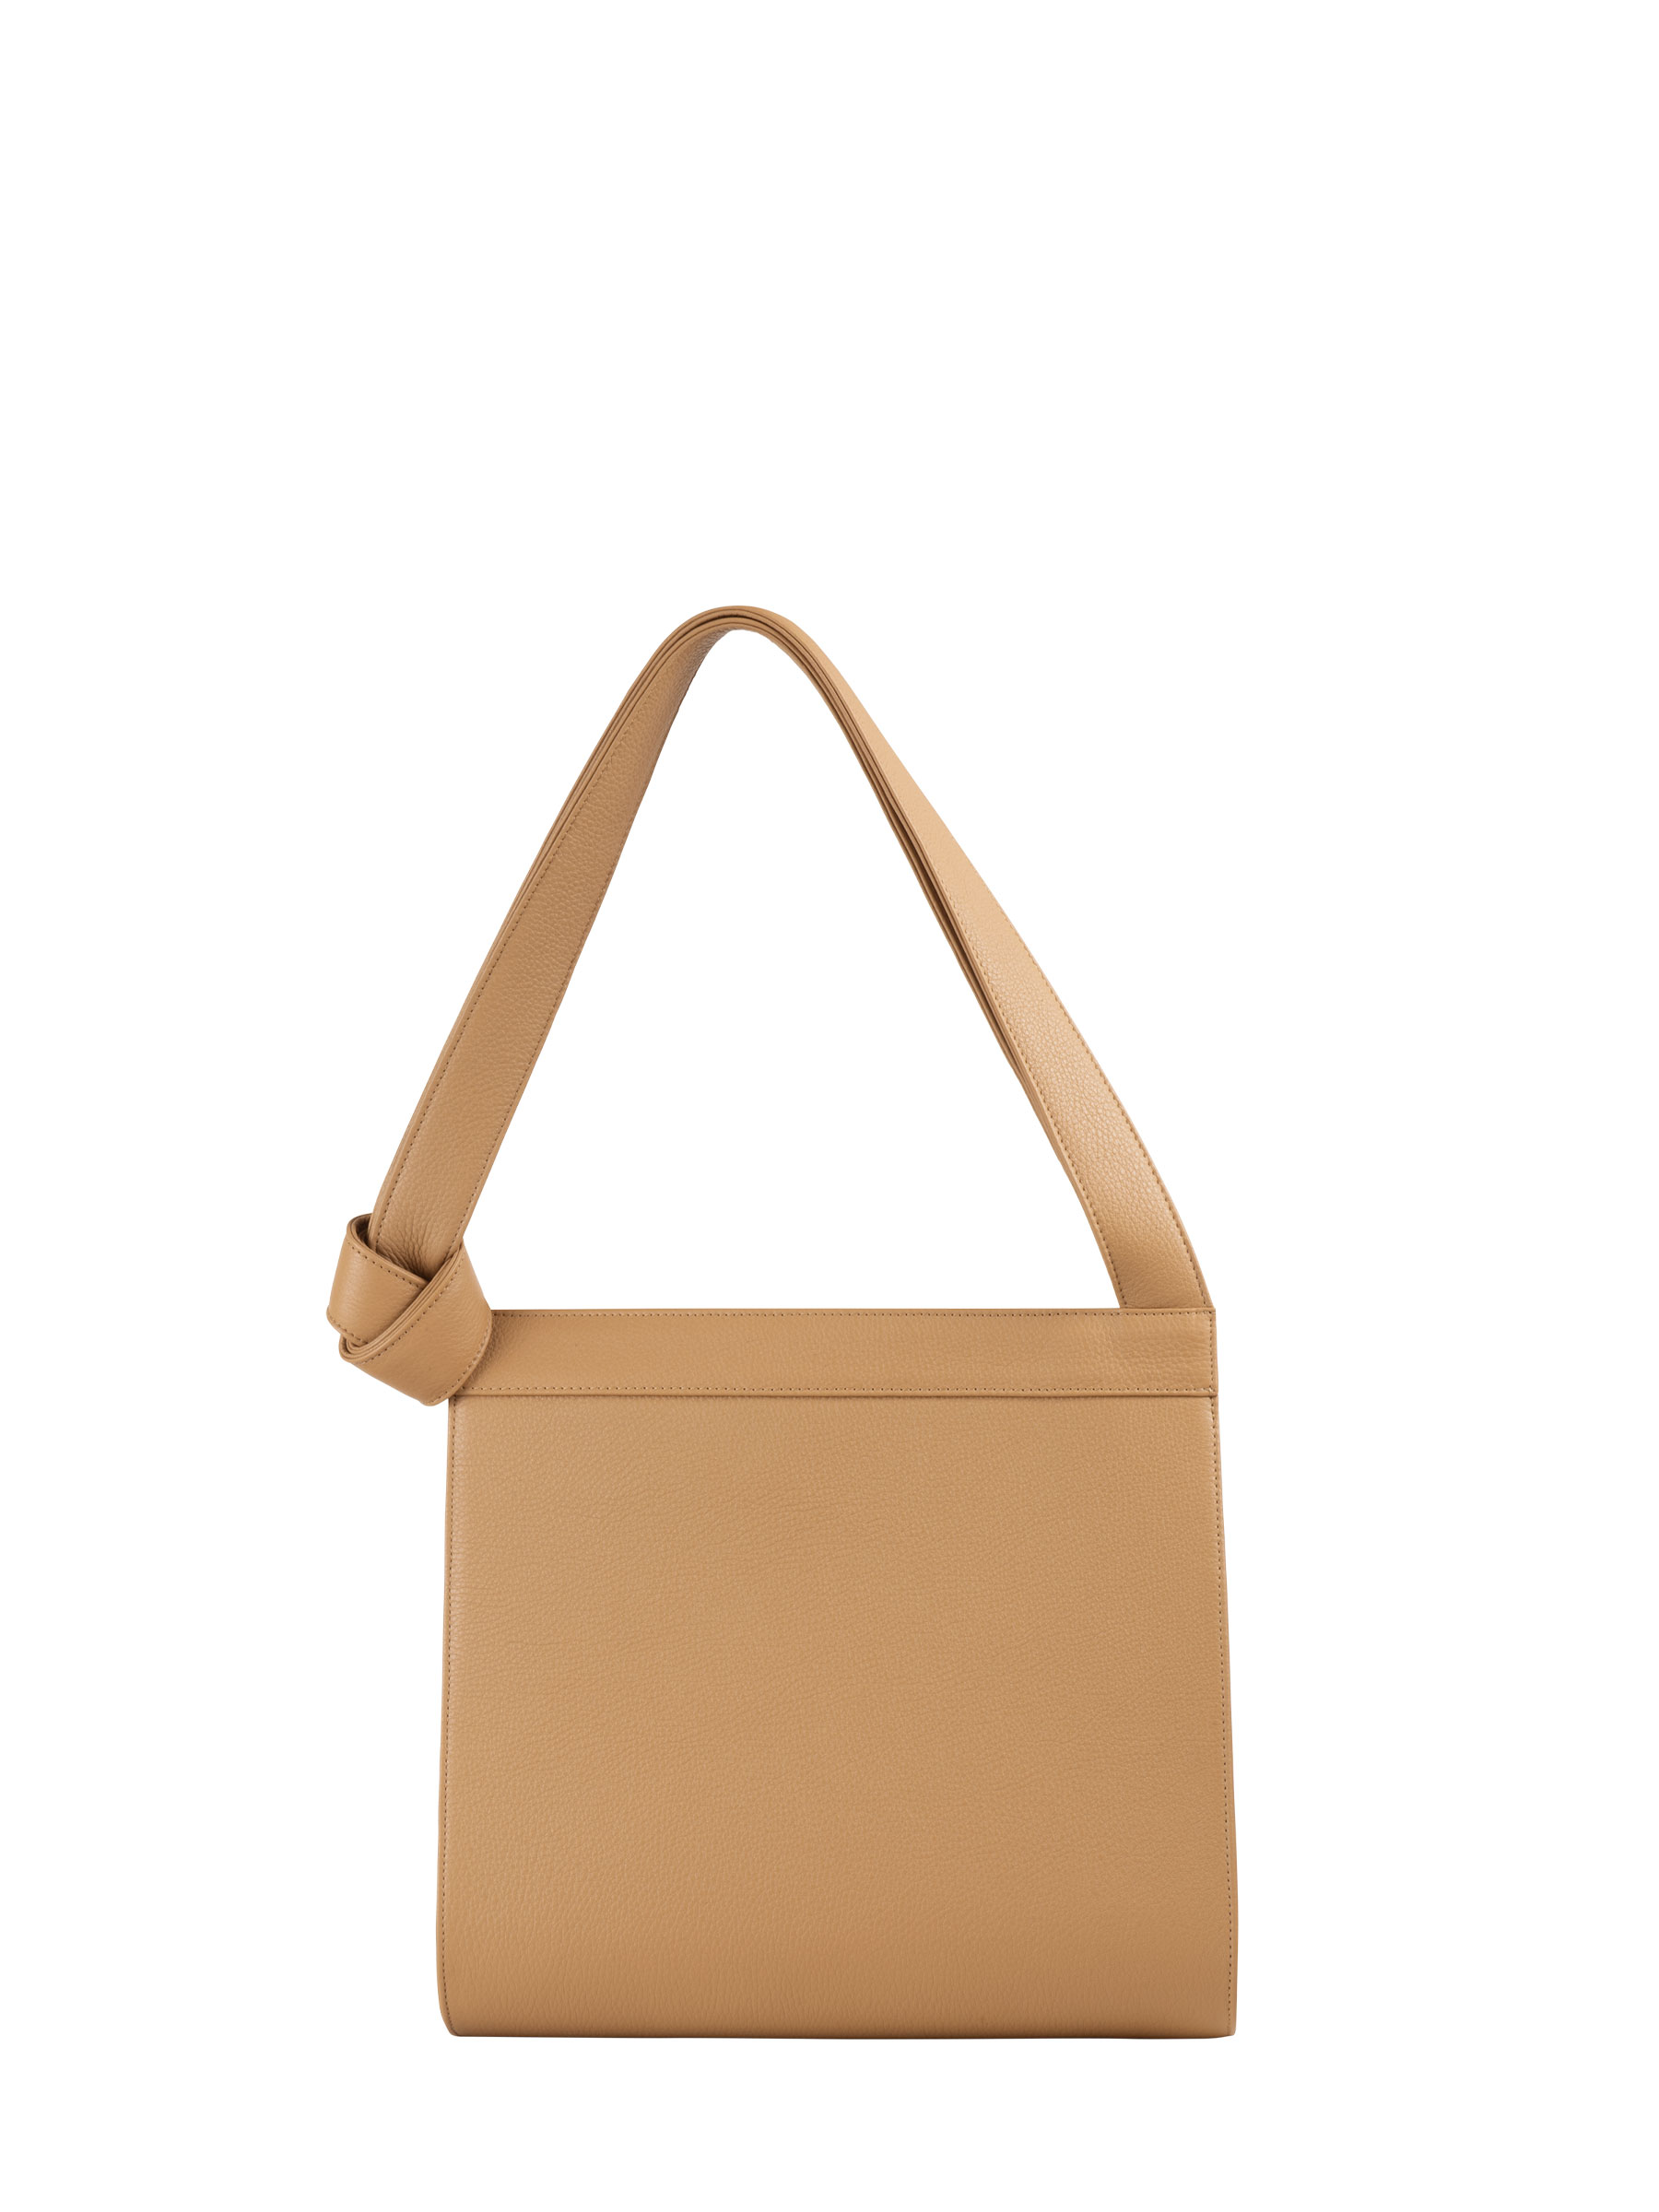 TAPE shoulder bag in cashew calfskin leather | TSATSAS